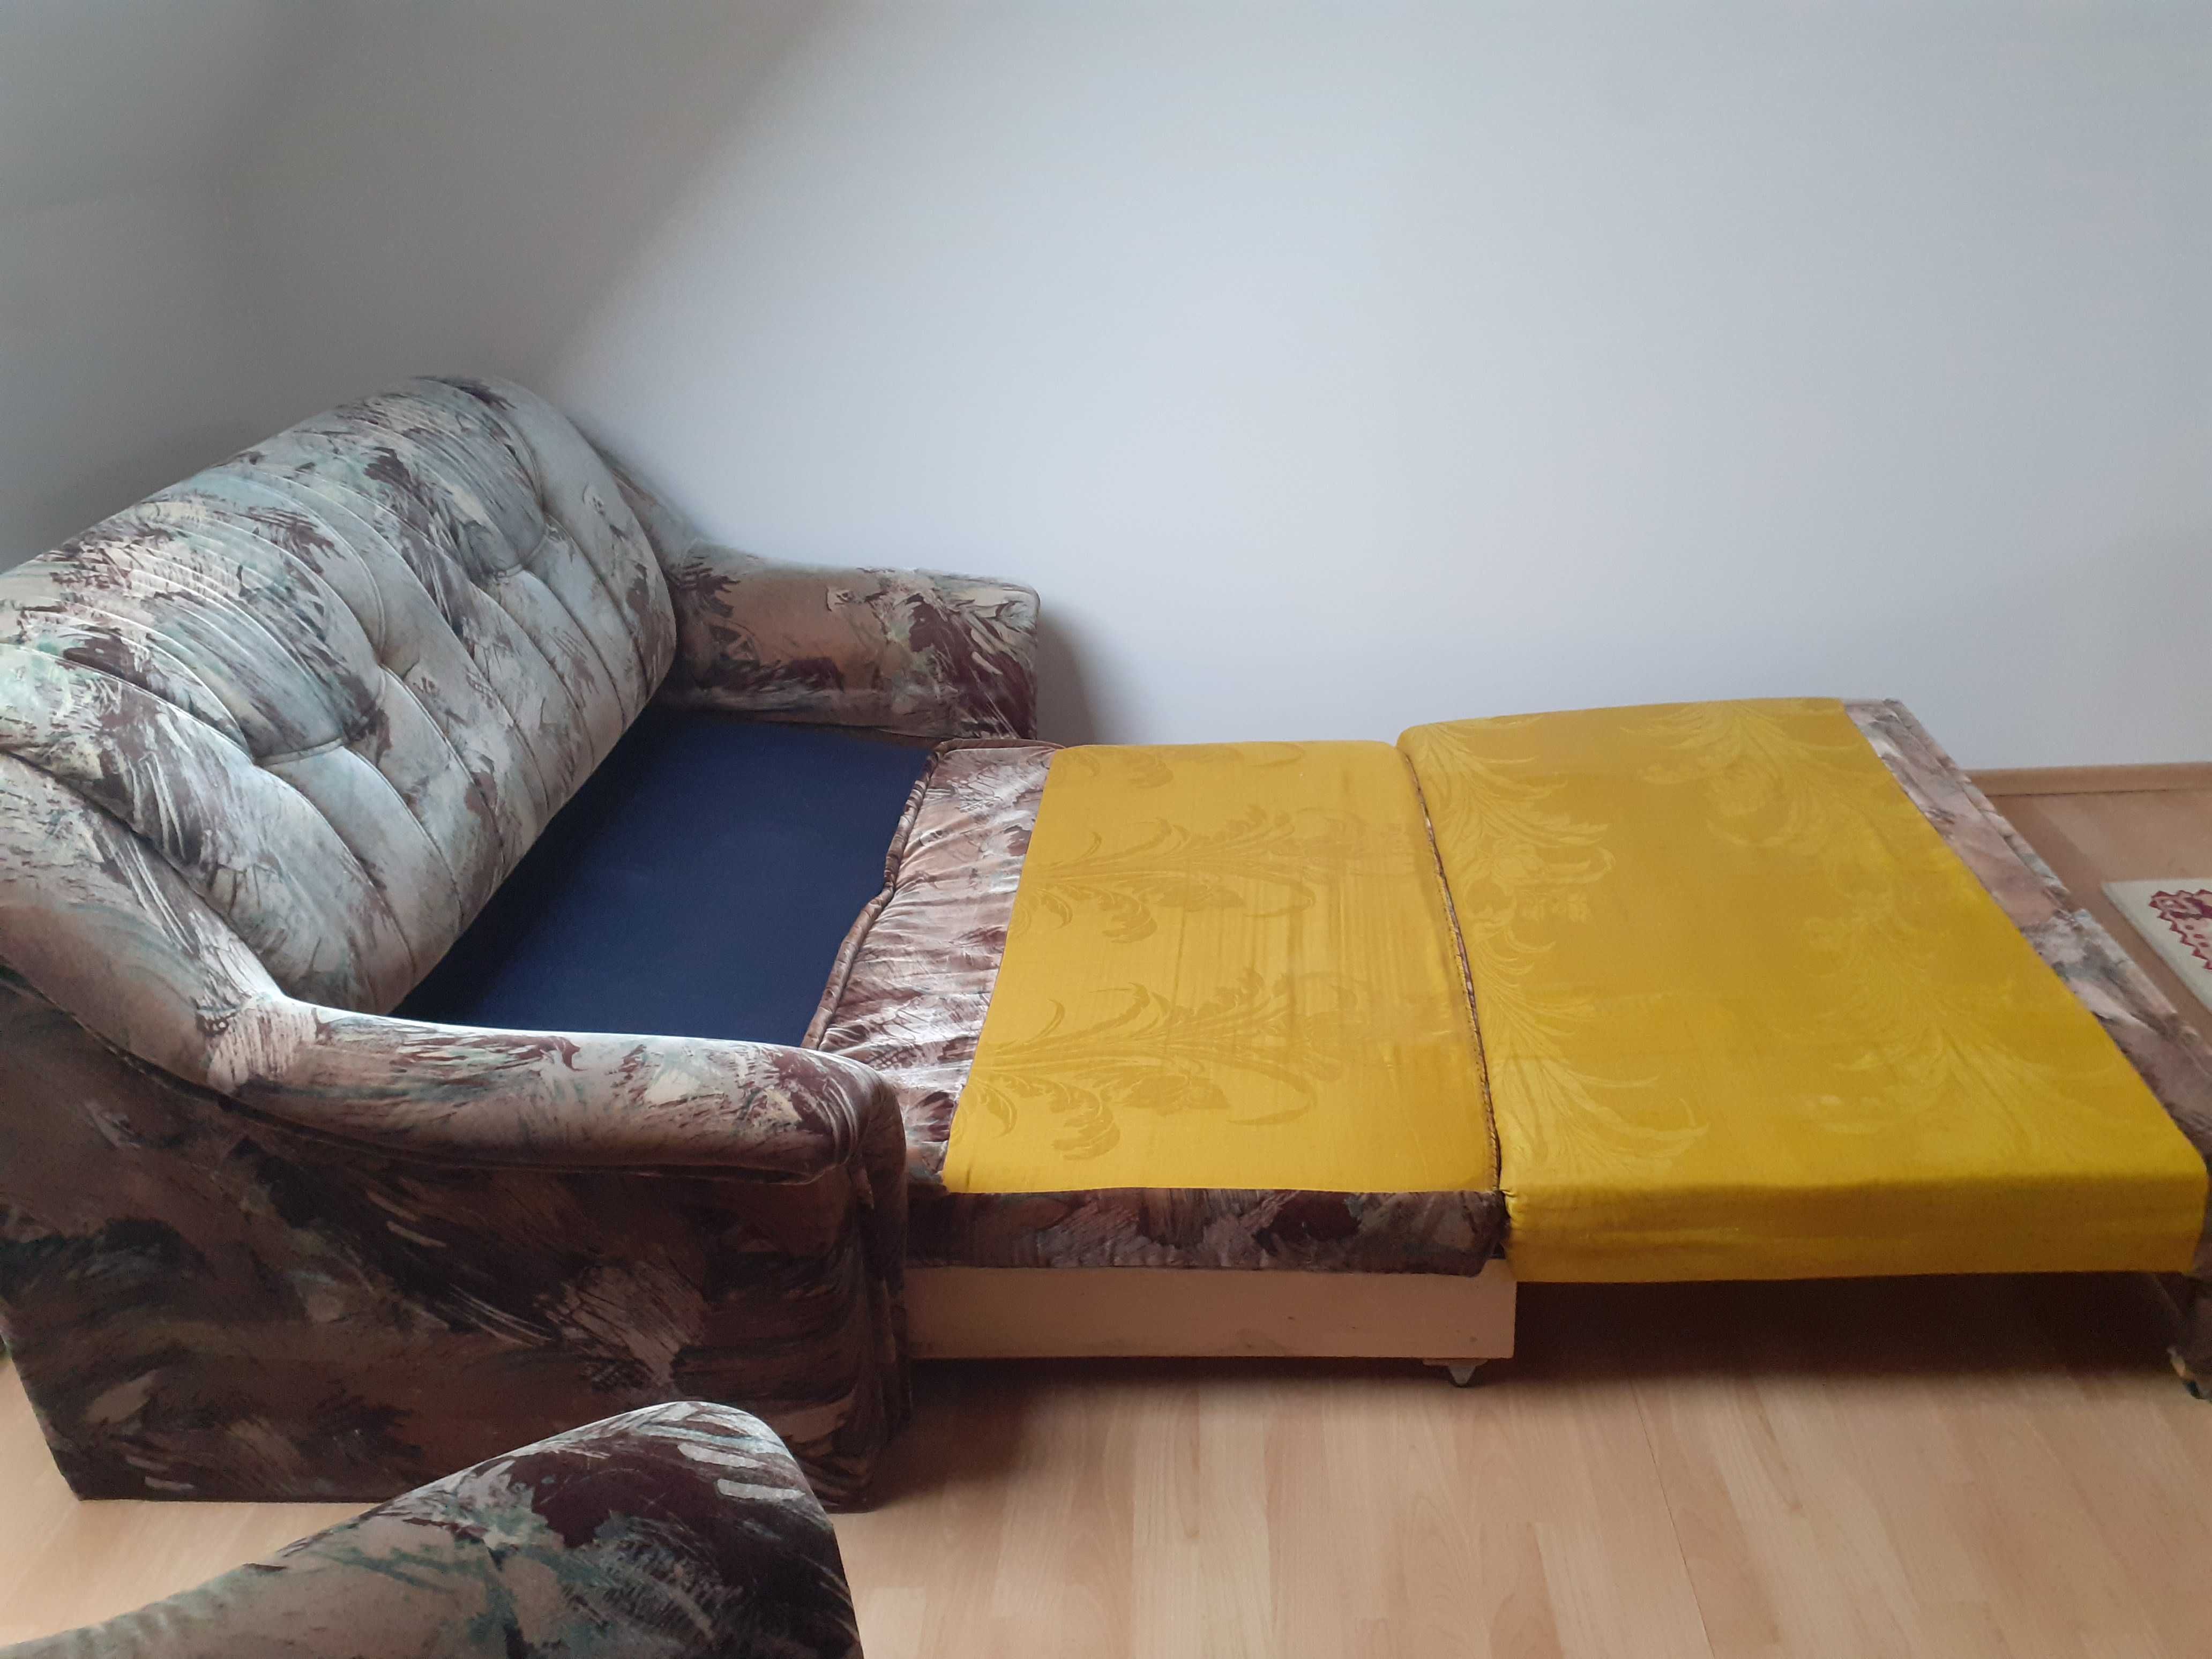 Sofa rozkładana w dobrym stanie - nowa tańsza cena